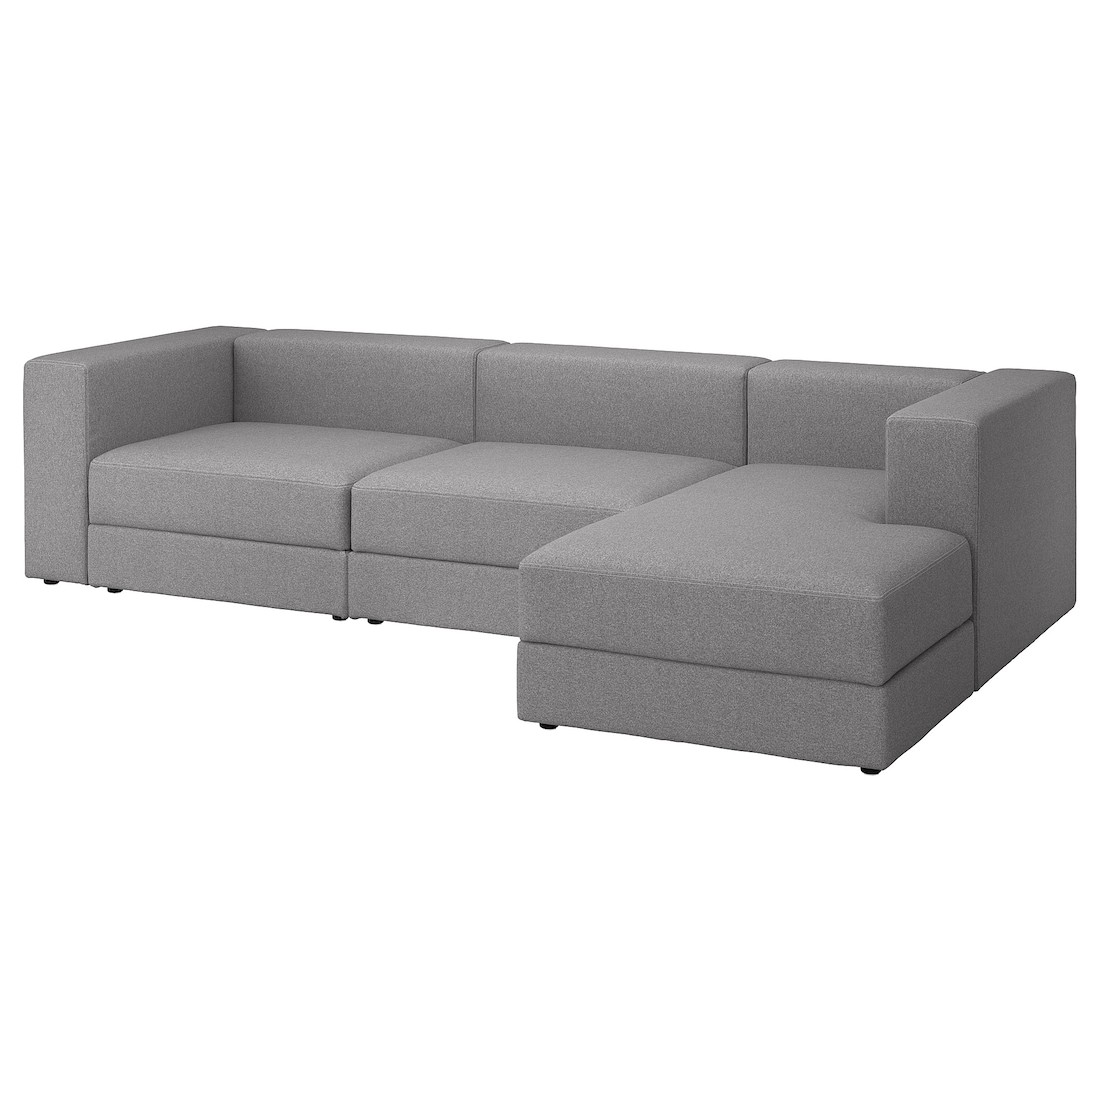 JÄTTEBO 4-местный модульный диван с козеткой, правосторонний / Tonerud серый